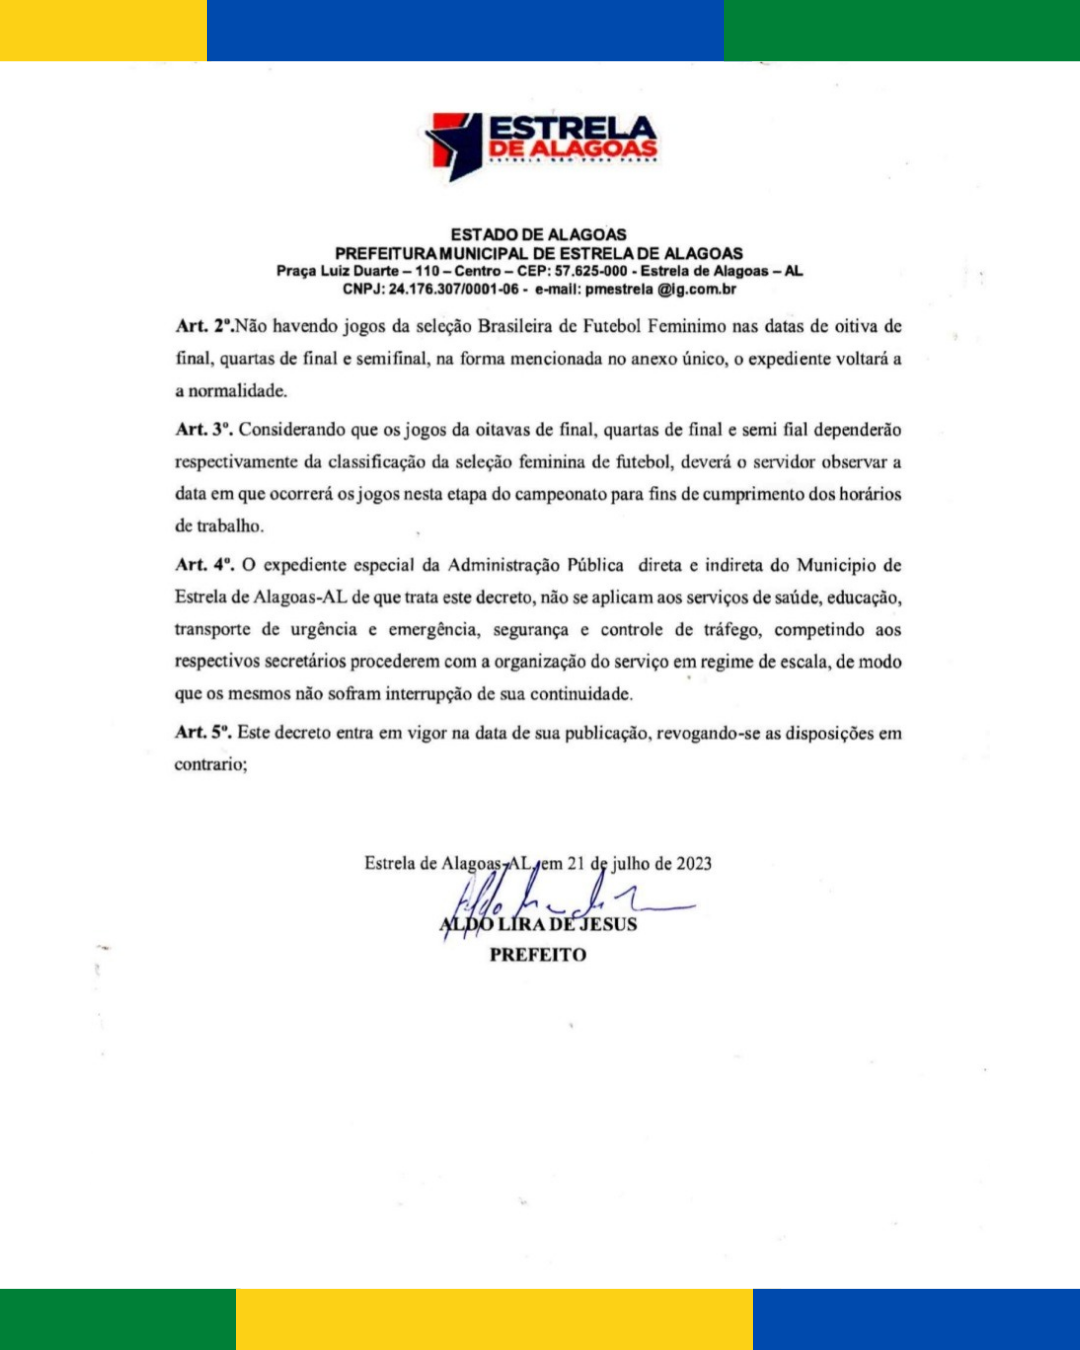 Decreto nº 31/2023: Sobre Expediente Especial nas repartições públicas municipais em Estrela de Alagoas – AL, por ocasião da Copa do Mundo de Futebol Feminino